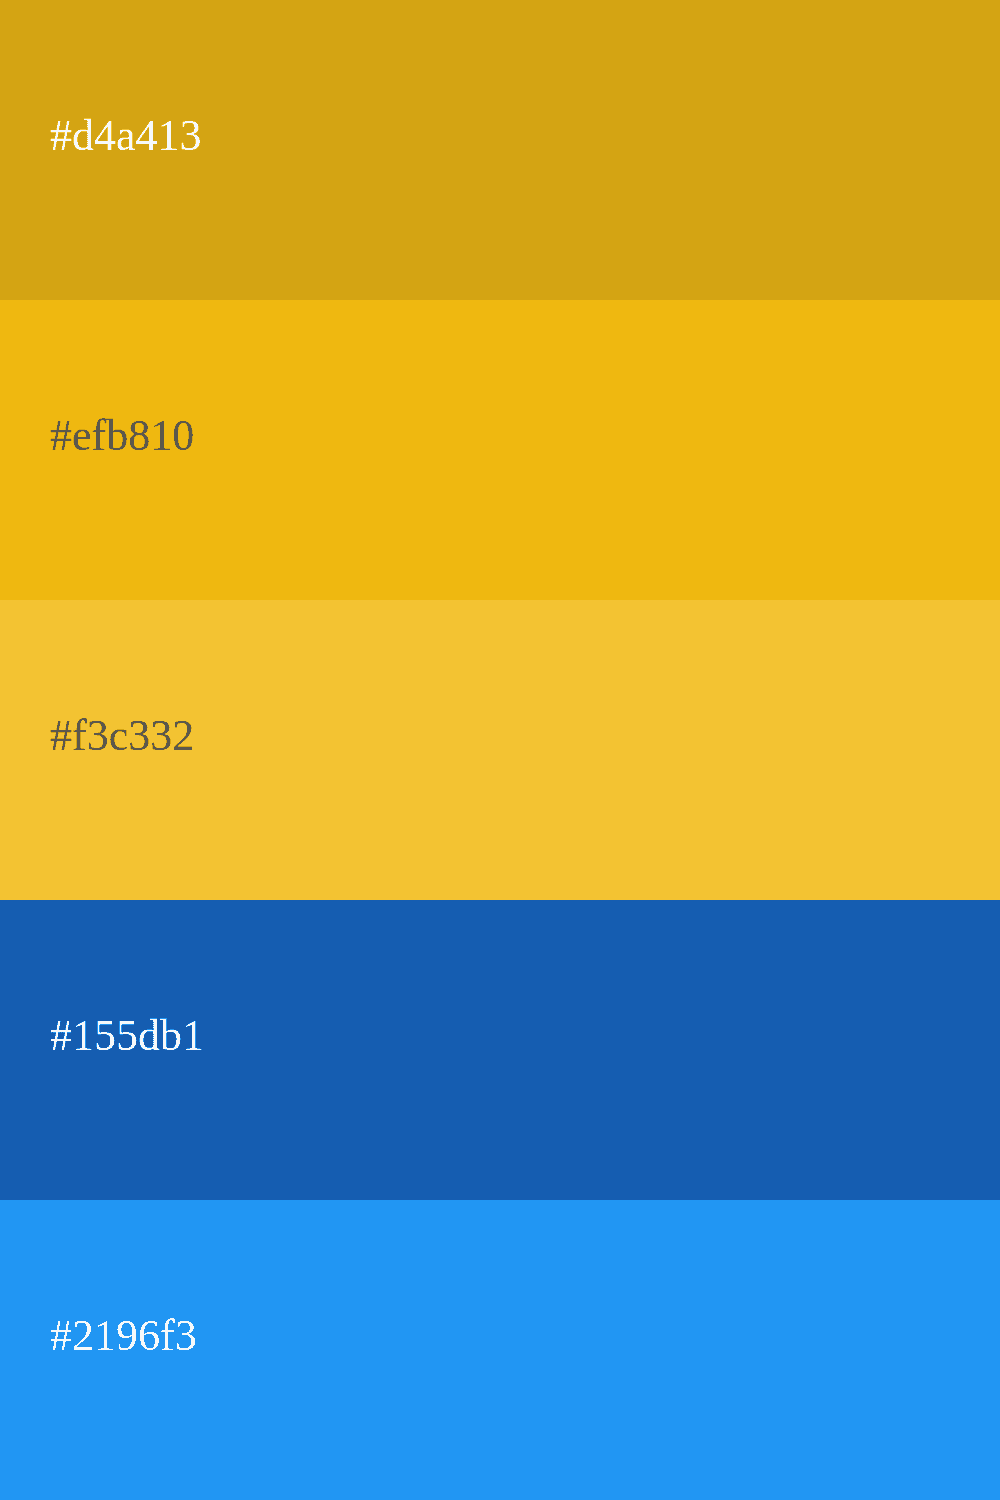 paleta de color dorado y azul